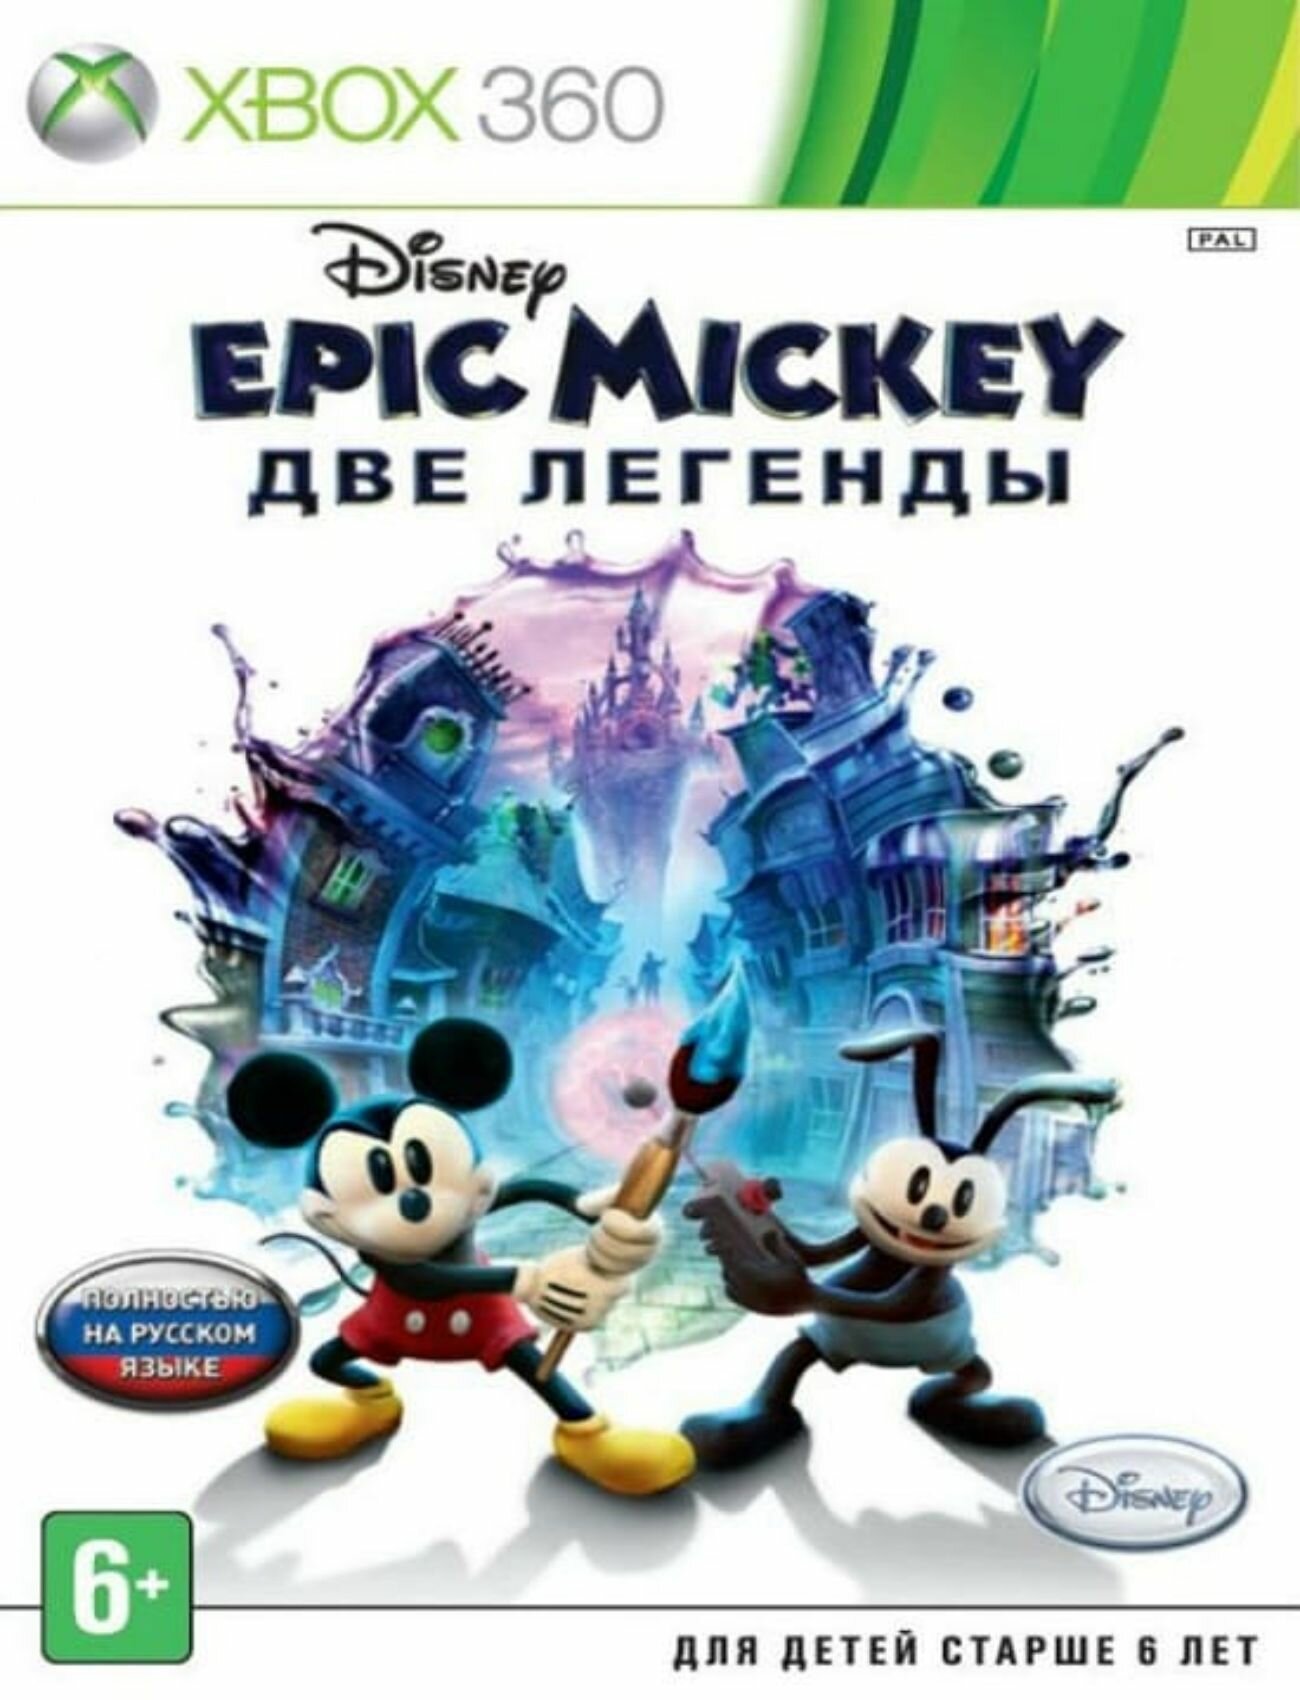 Epic Mickey Две Легенды Полностью на русском Видеоигра на диске Xbox 360